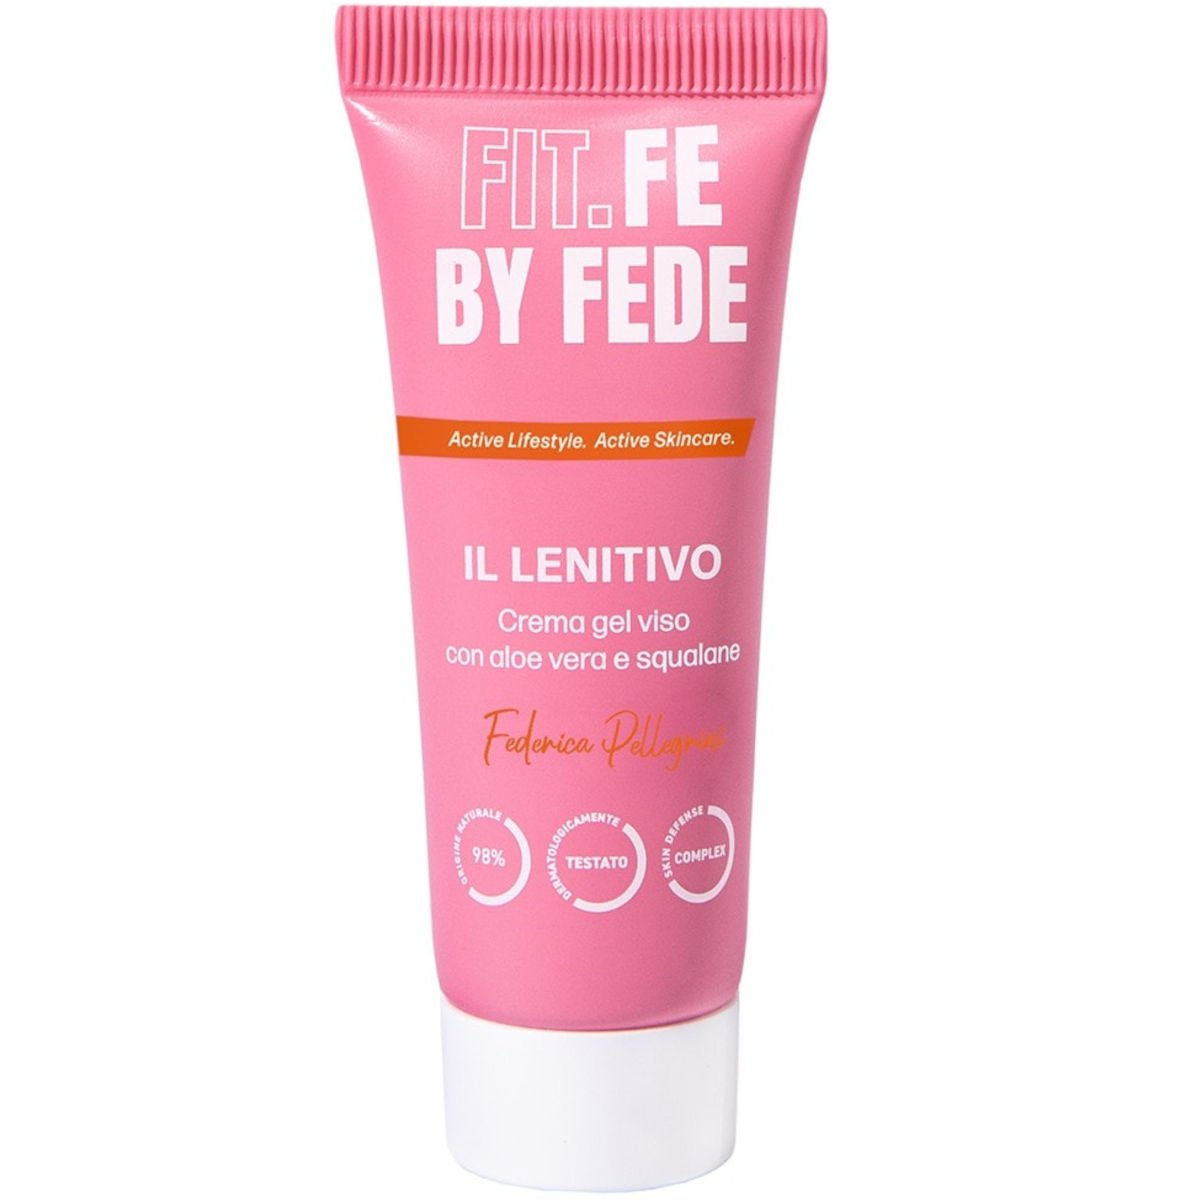 Fit.Fe by Fede prodotti skincare viso